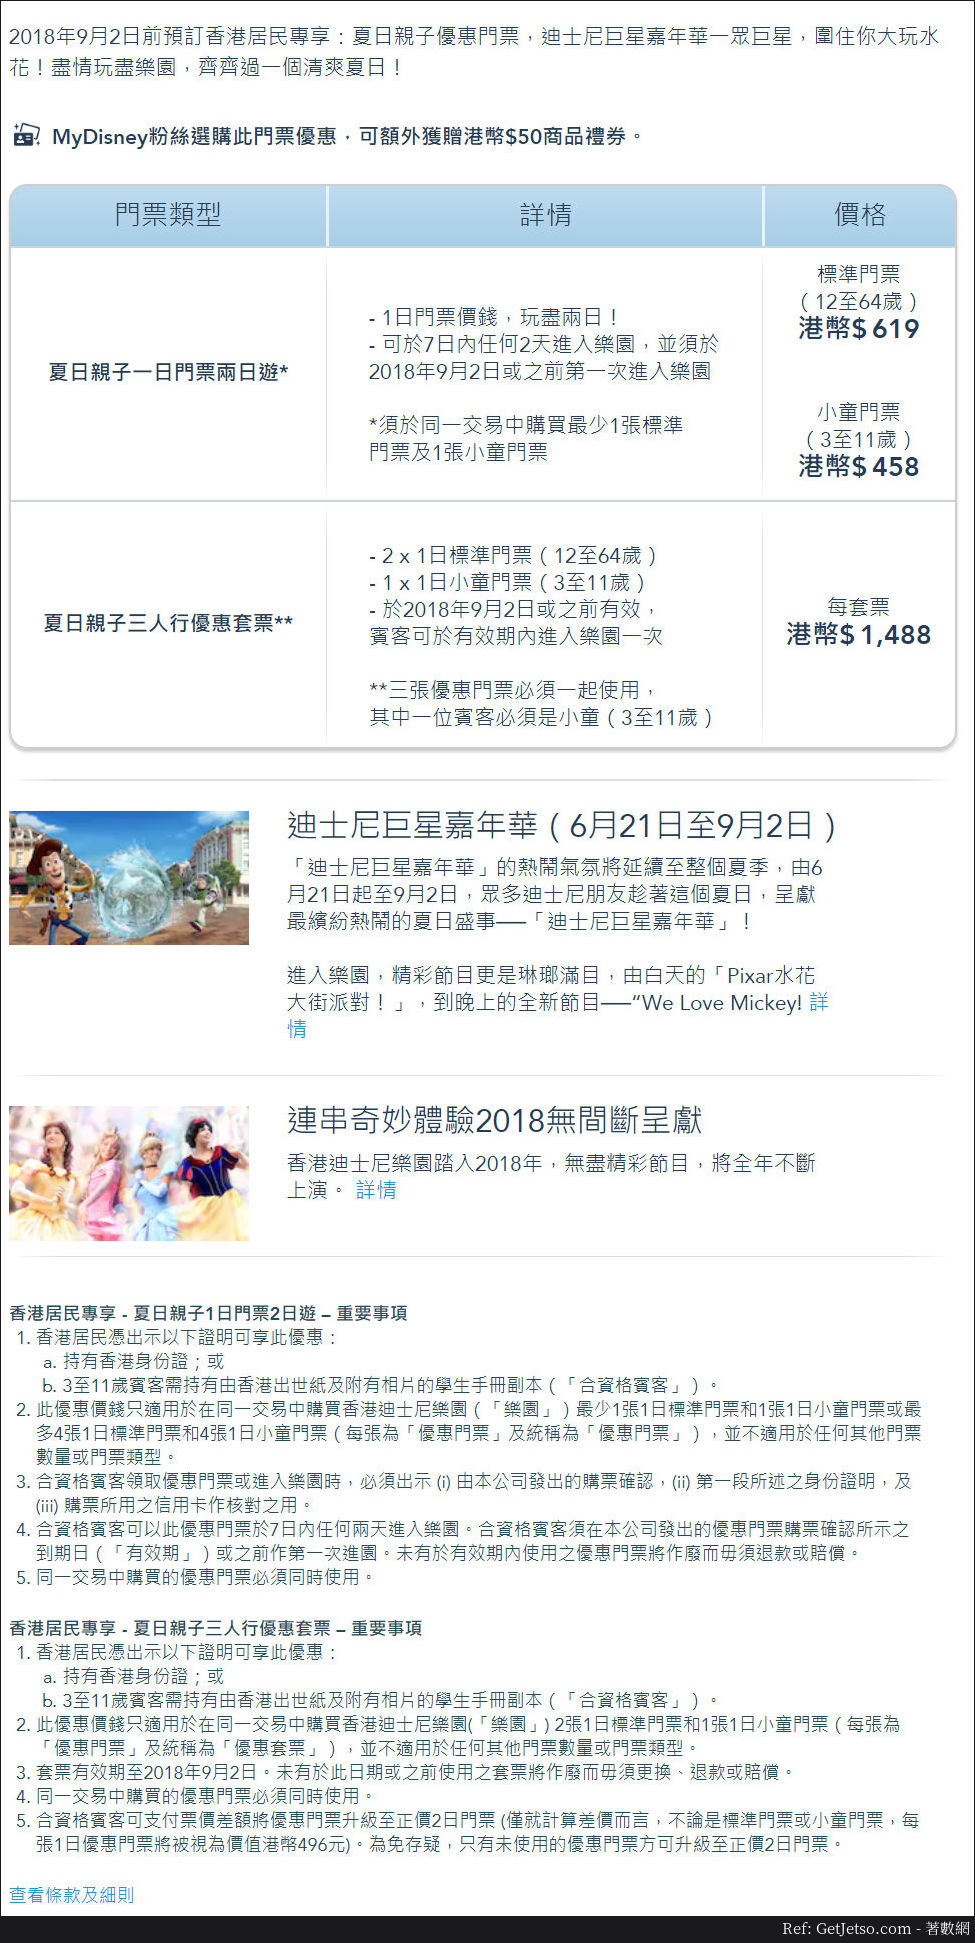 香港迪士尼樂園夏日親子優惠門票(至18年9月2日)圖片1